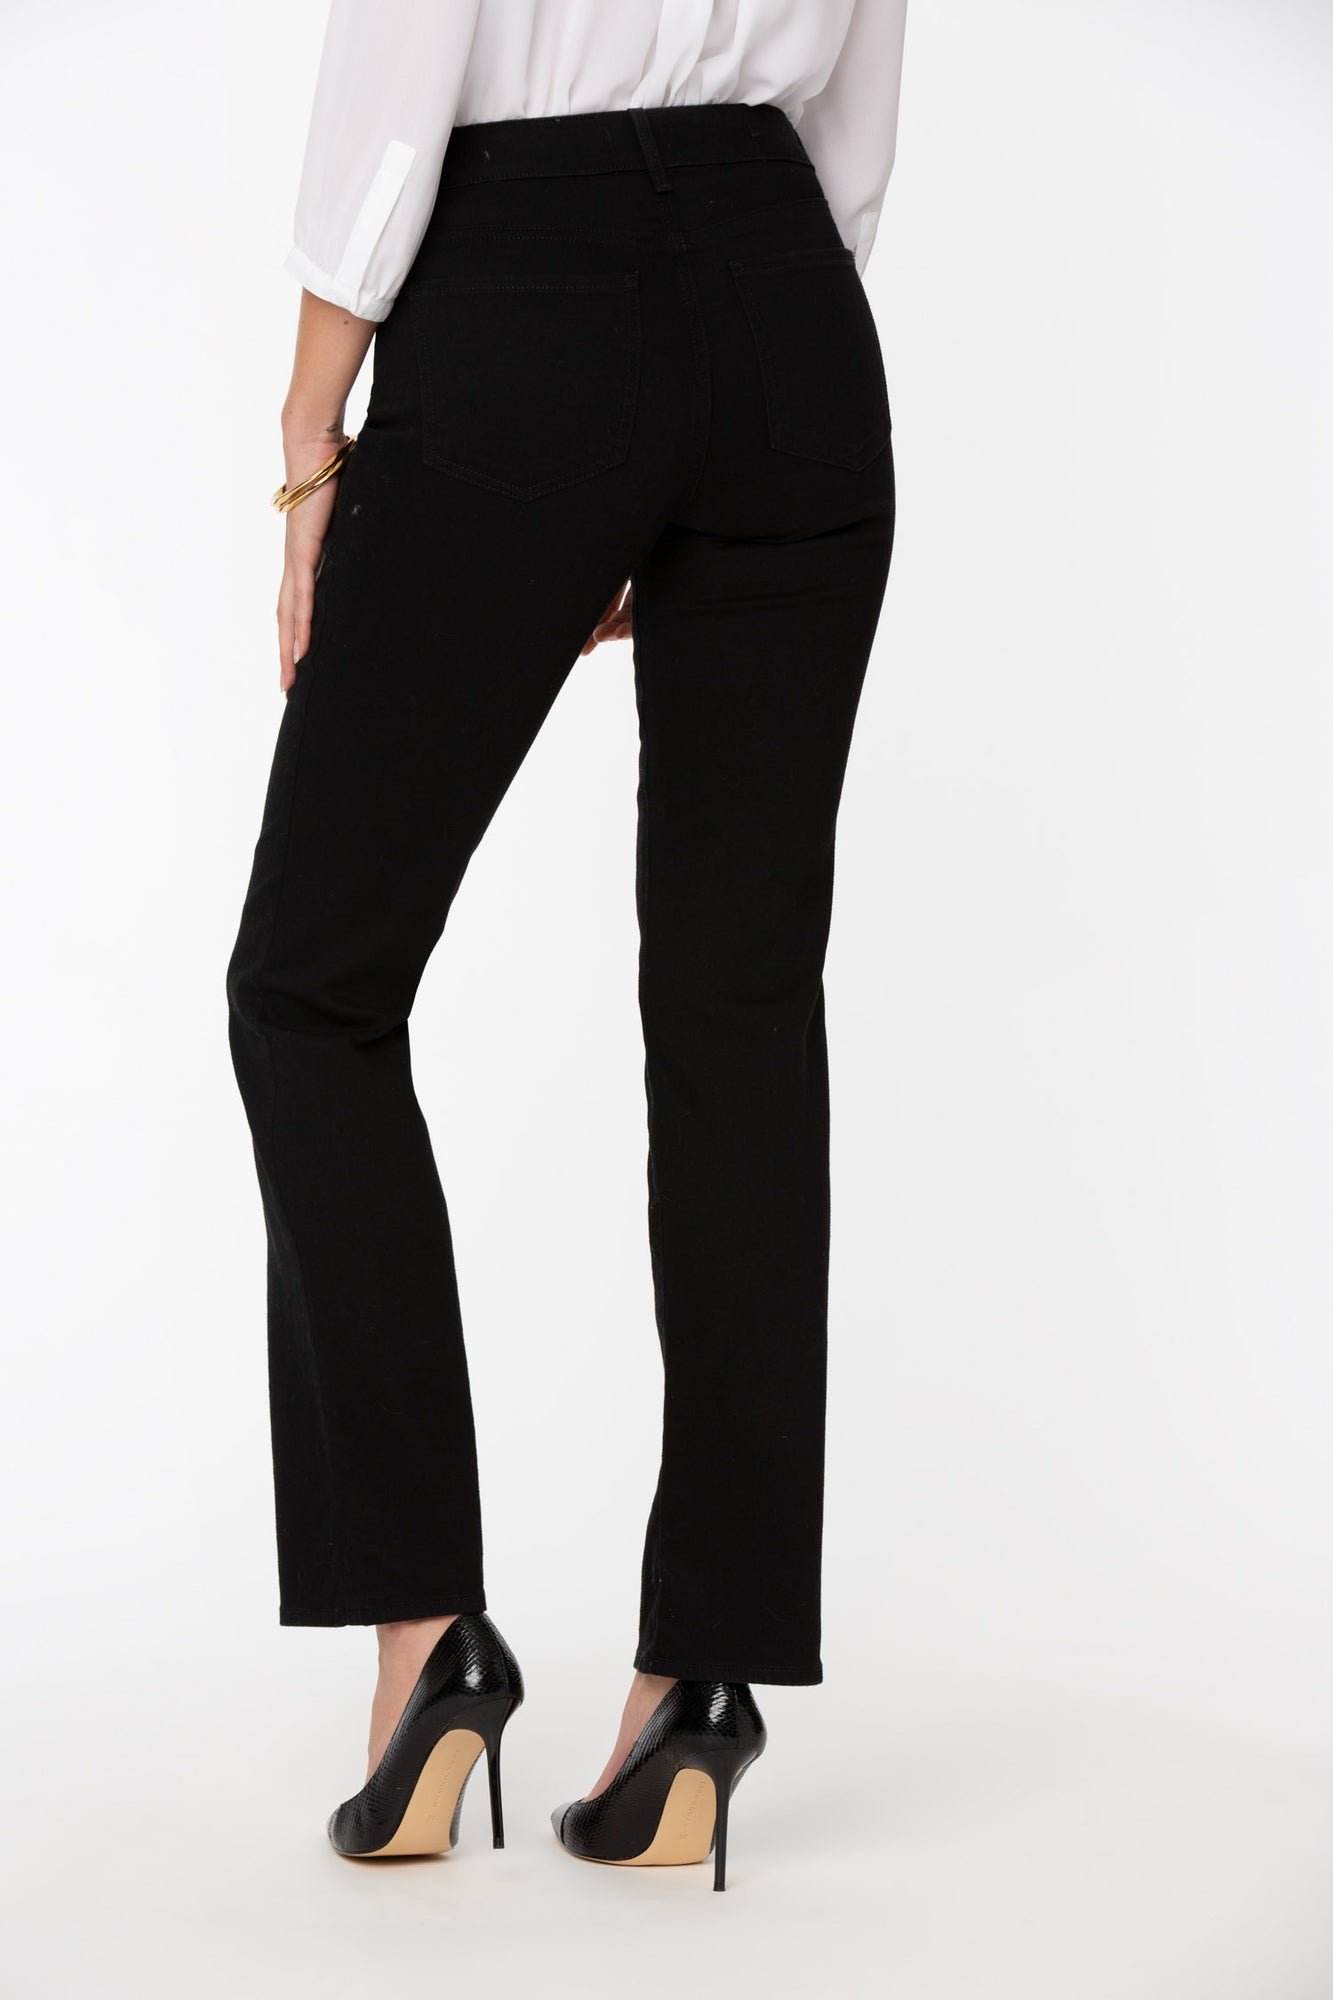 NYDJ, Jeans, New Nydj Marilyn Black Stretch Cuffed Crop Jean Capris Size  2 Bin 3f